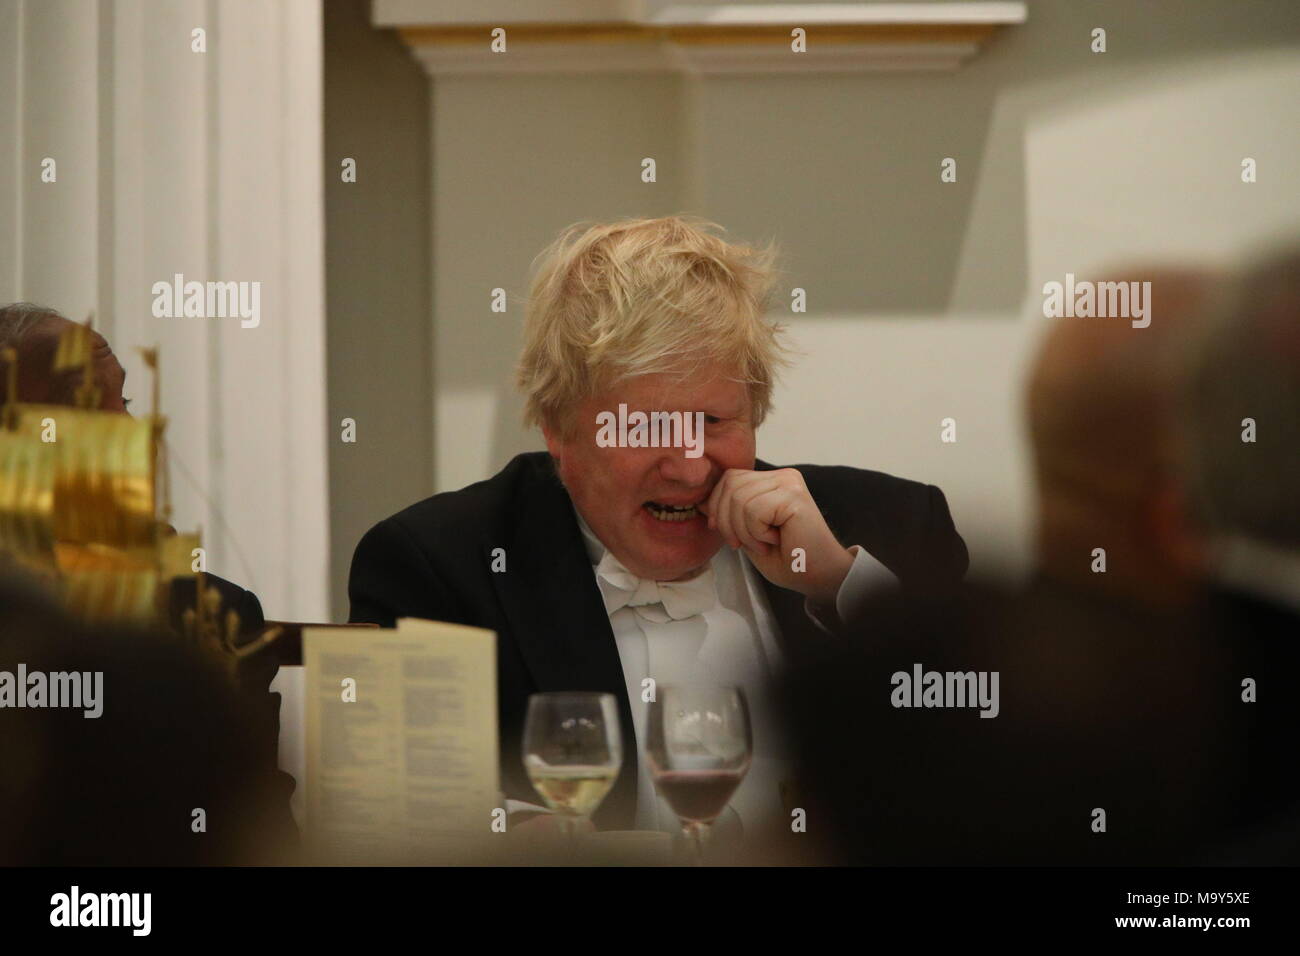 Secrétaire des affaires étrangères, Boris Johnson, au cours de la Pâques banquet organisé par Lord Maire de la City de Londres, Charles Bowman, à Mansion House dans la ville de Londres. Banque D'Images